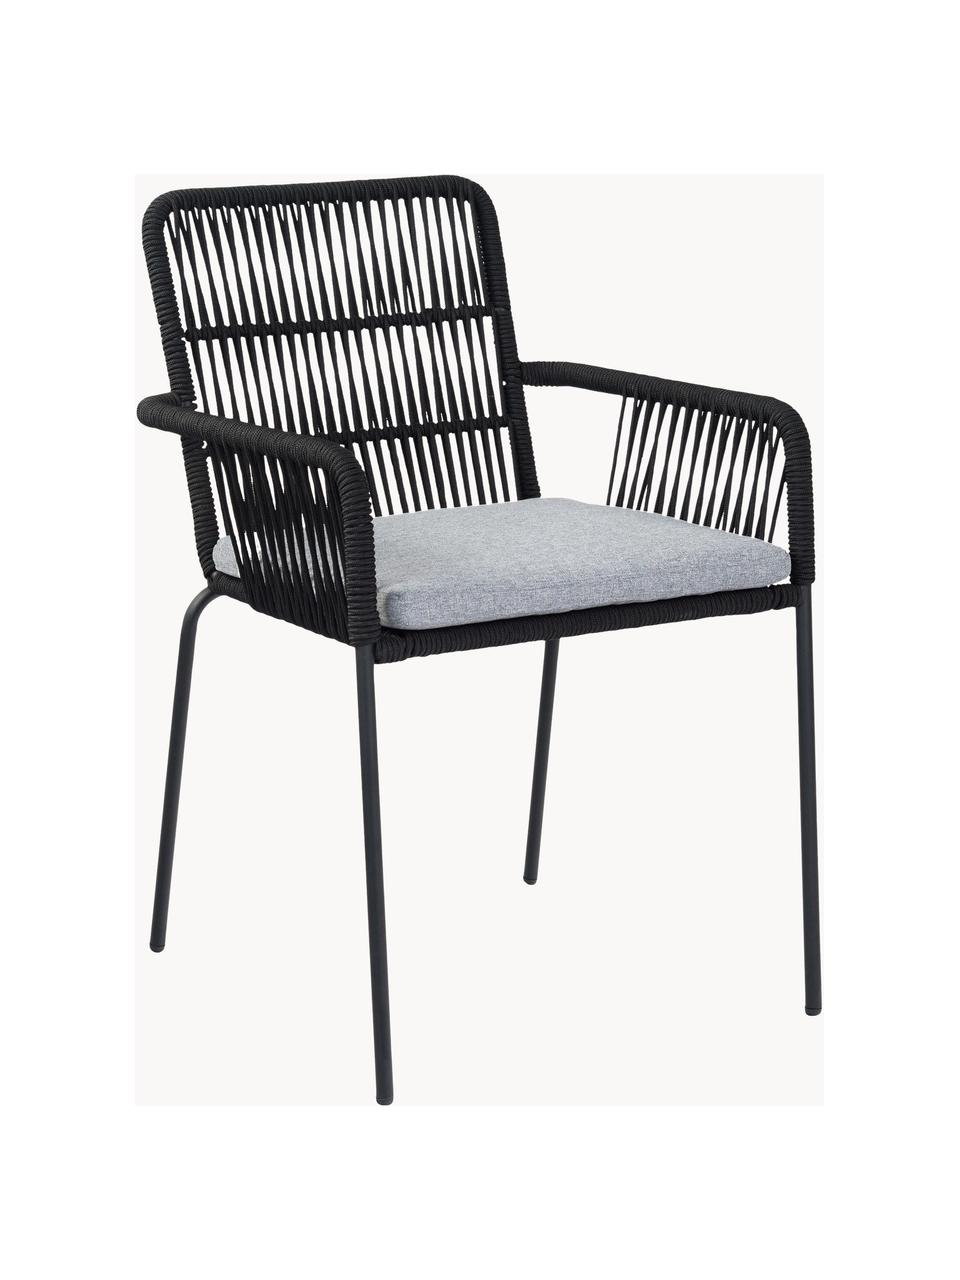 Armstoelen Sando met zitkussen, 2 stuks, Zitvlak: polyethyleen vlechtwerk, Frame: gepoedercoat metaal, Geweven stof grijs, zwart, B 55 x D 65 cm